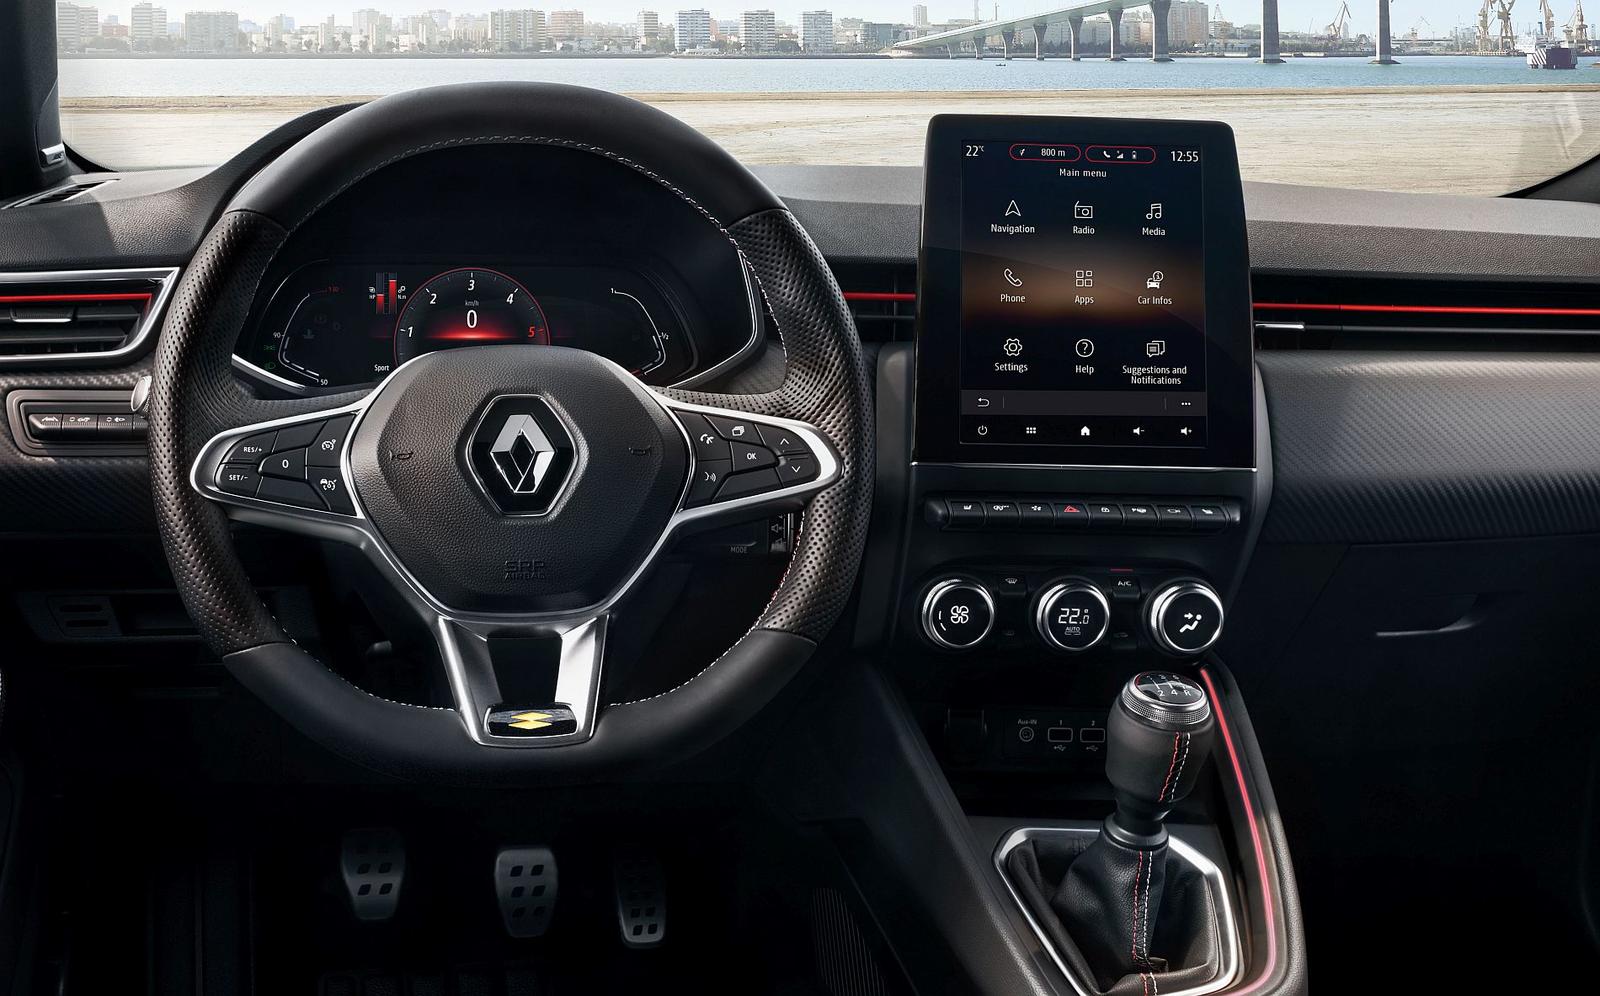 Renault Clio interior 2019 (2)_